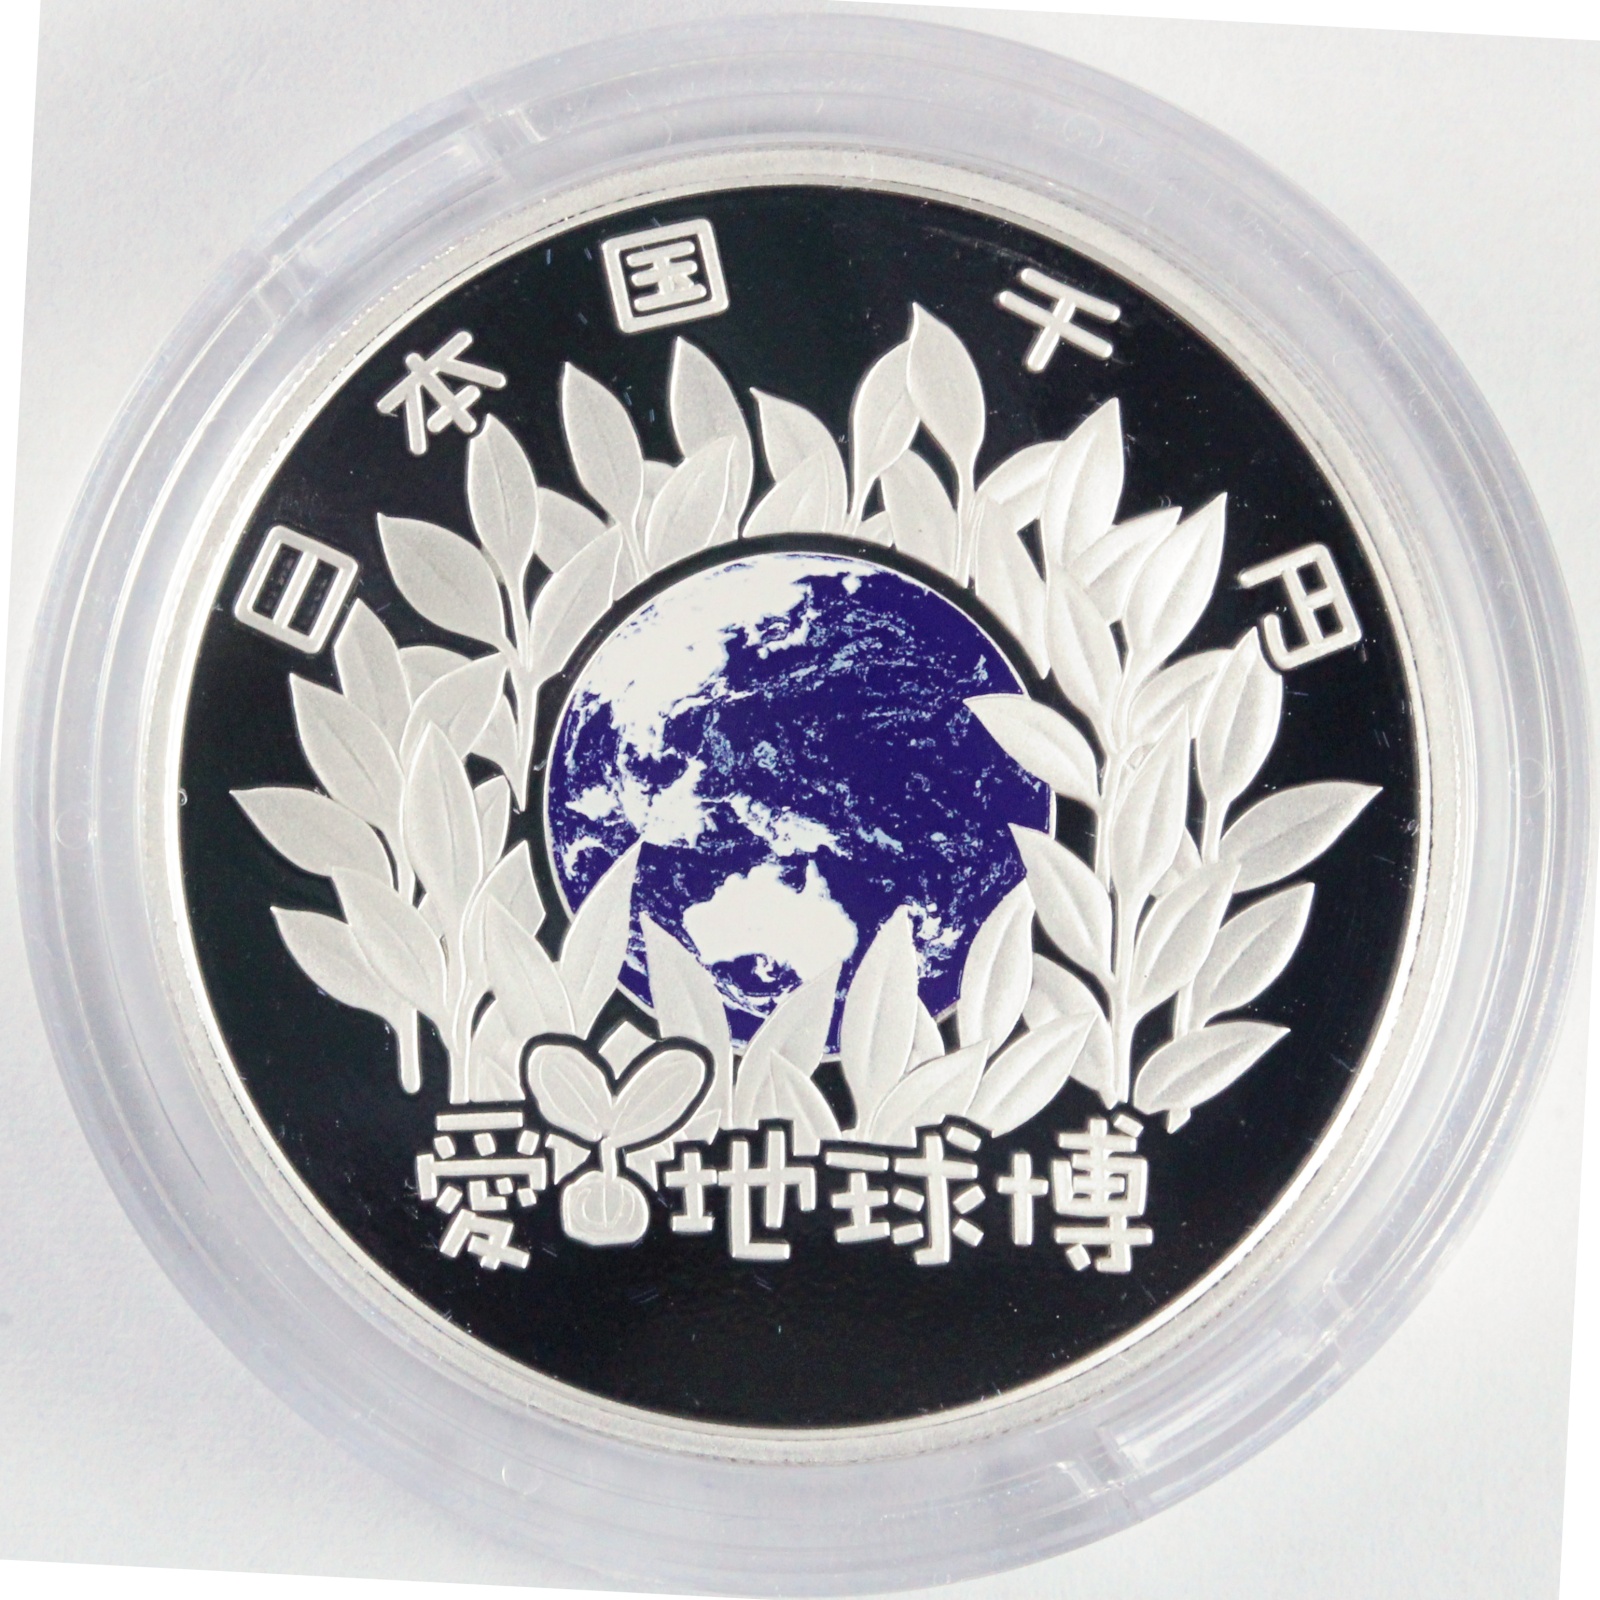 2005年 日本国際博覧会記念 壱万円金貨幣・千円銀貨幣プルーフ貨幣